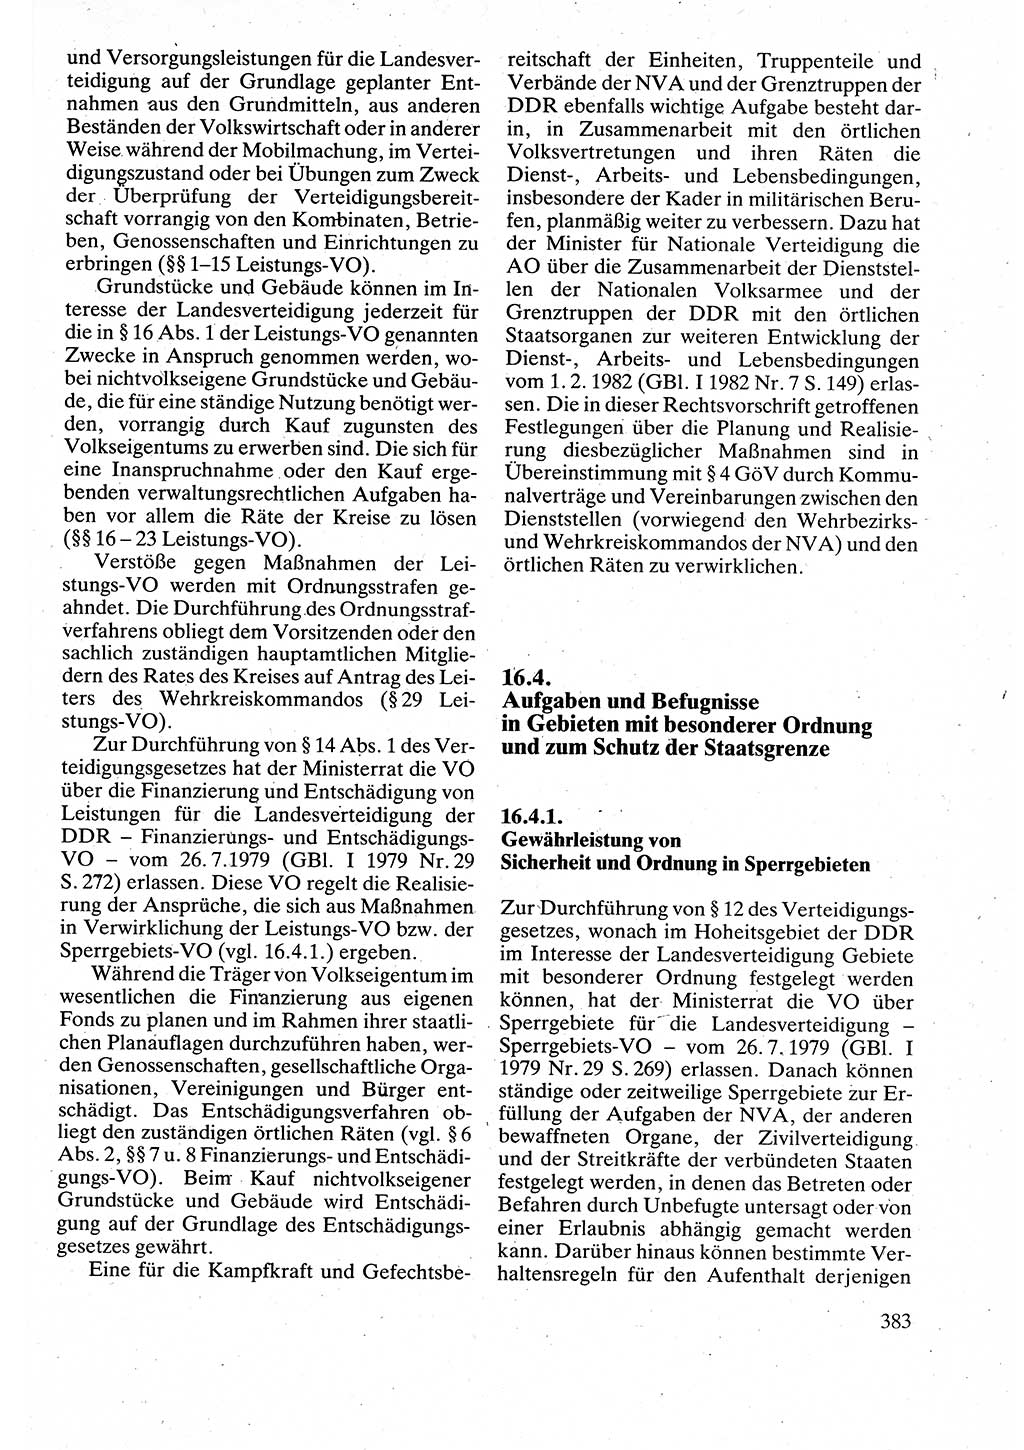 Verwaltungsrecht [Deutsche Demokratische Republik (DDR)], Lehrbuch 1988, Seite 383 (Verw.-R. DDR Lb. 1988, S. 383)